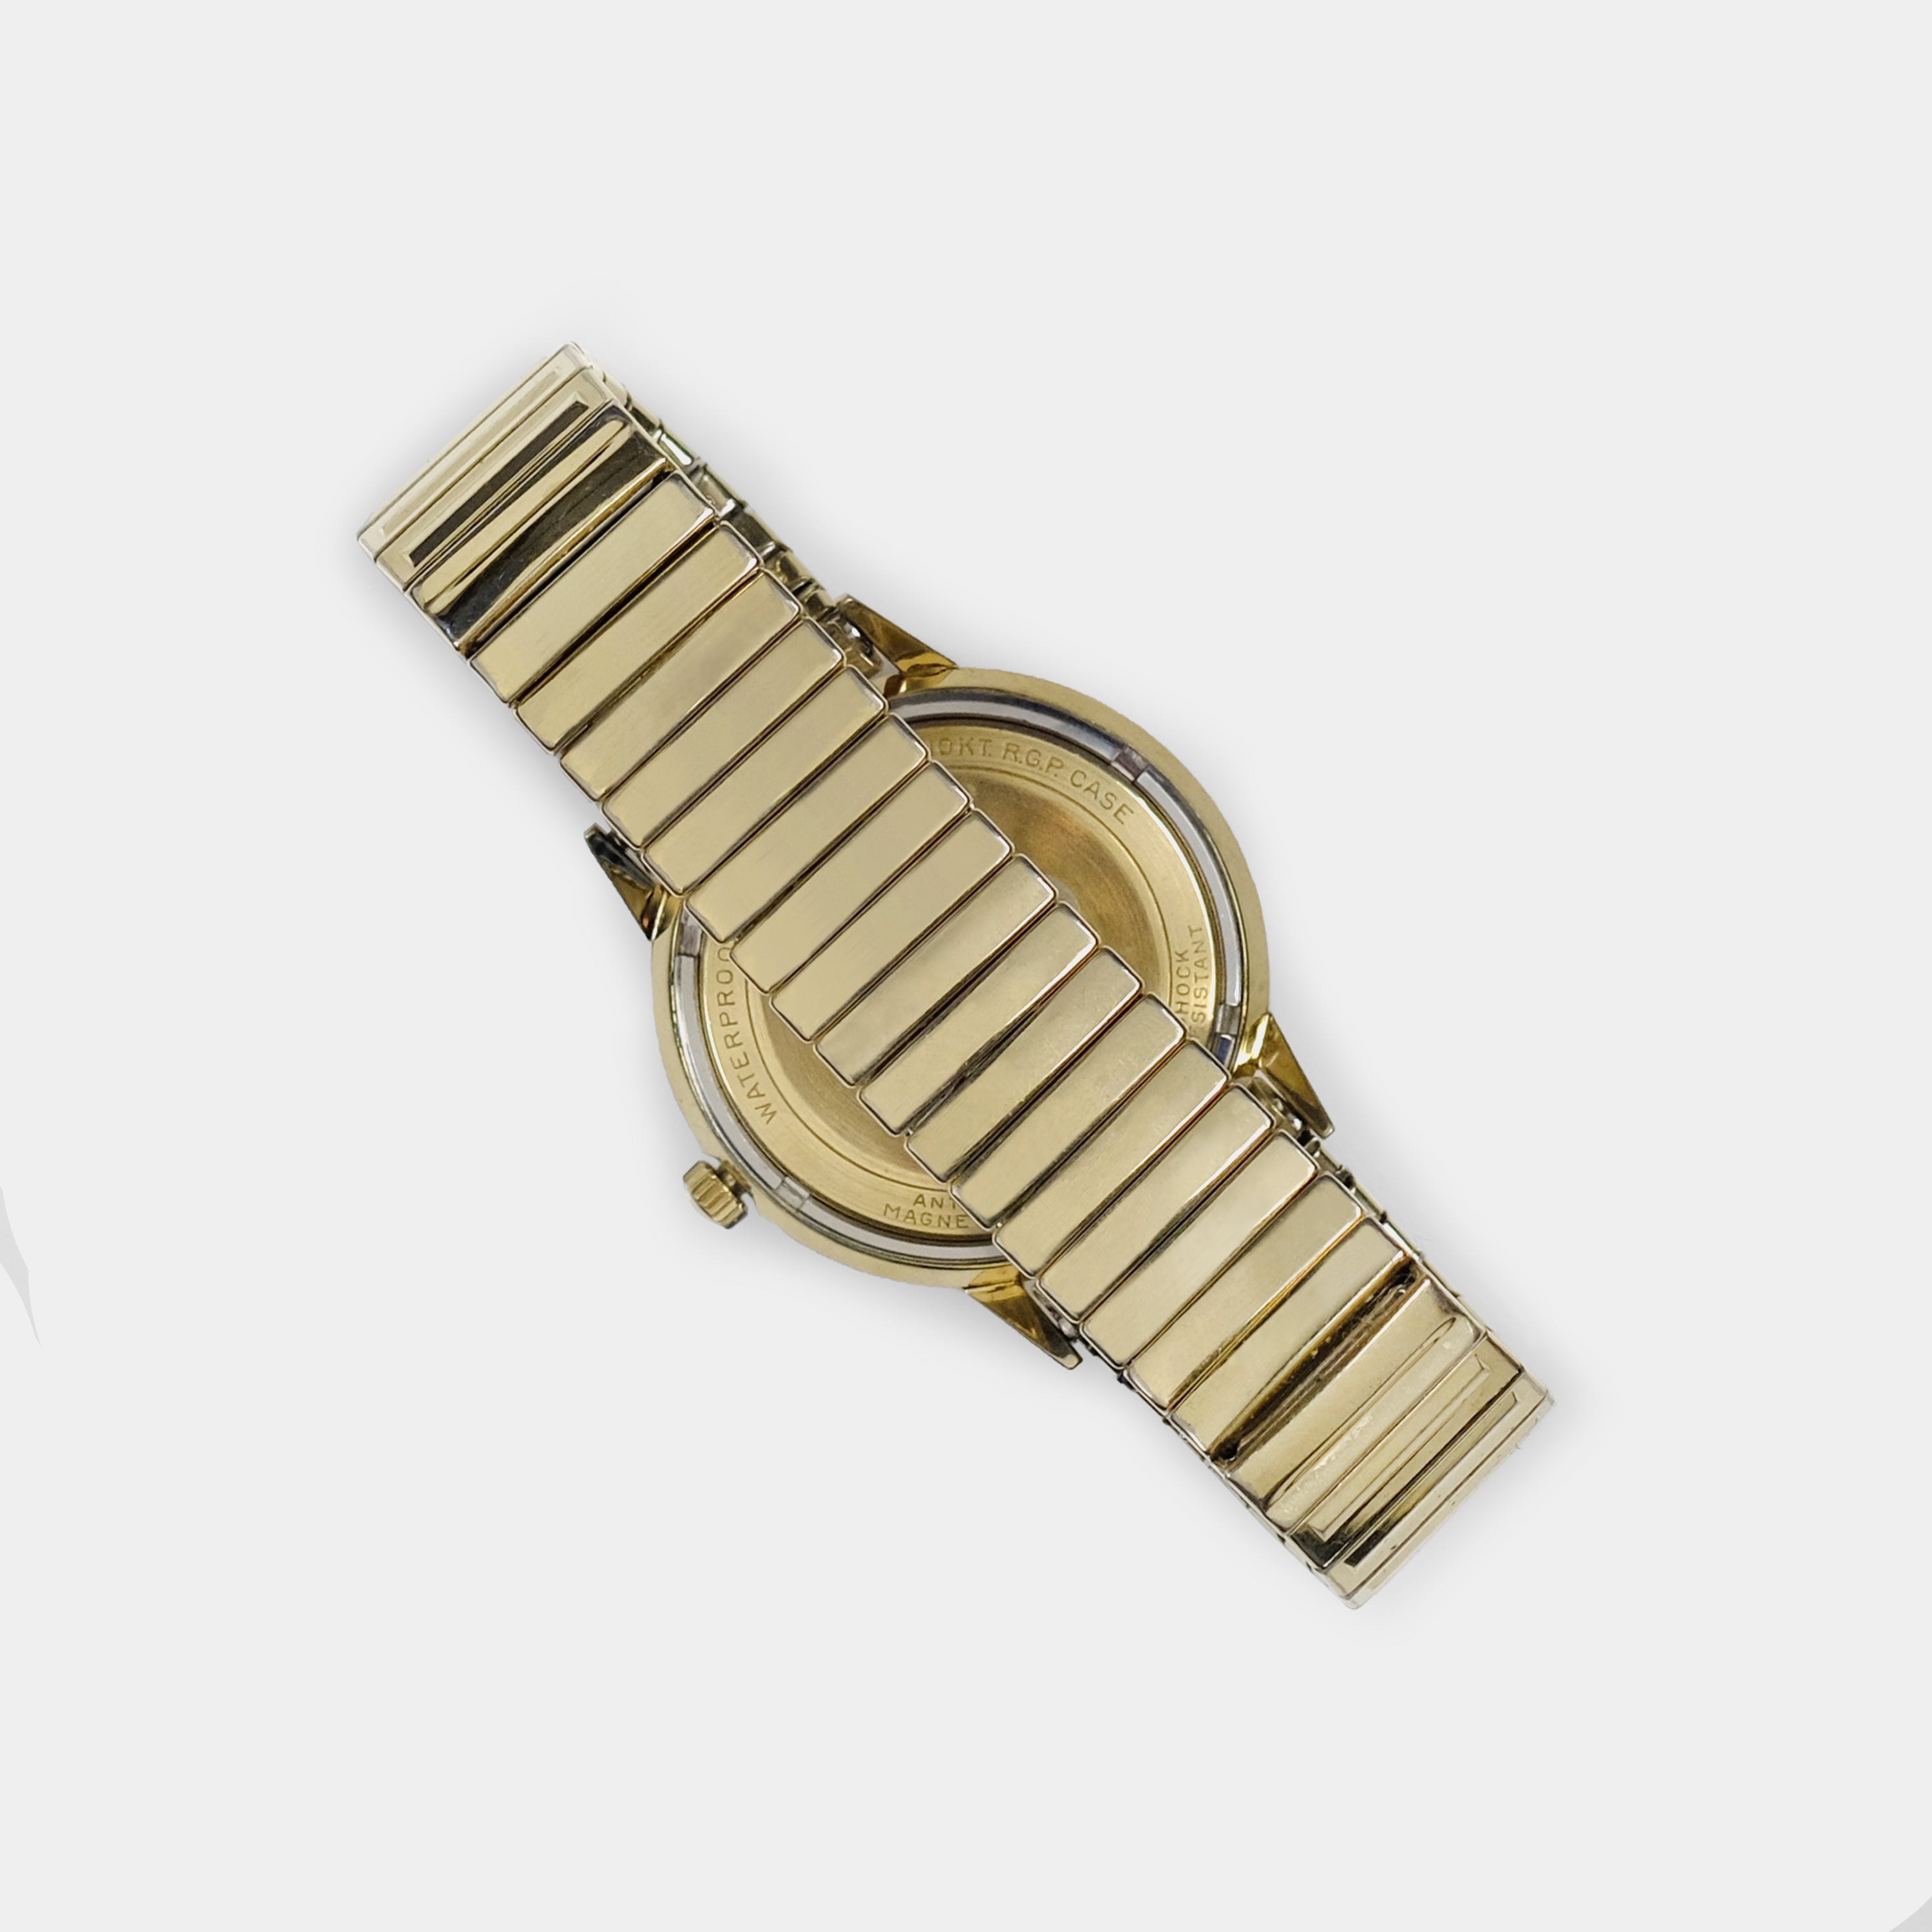 Bulova Self-Winding Automatic Gold-Plated Circa 1967 Wristwatch